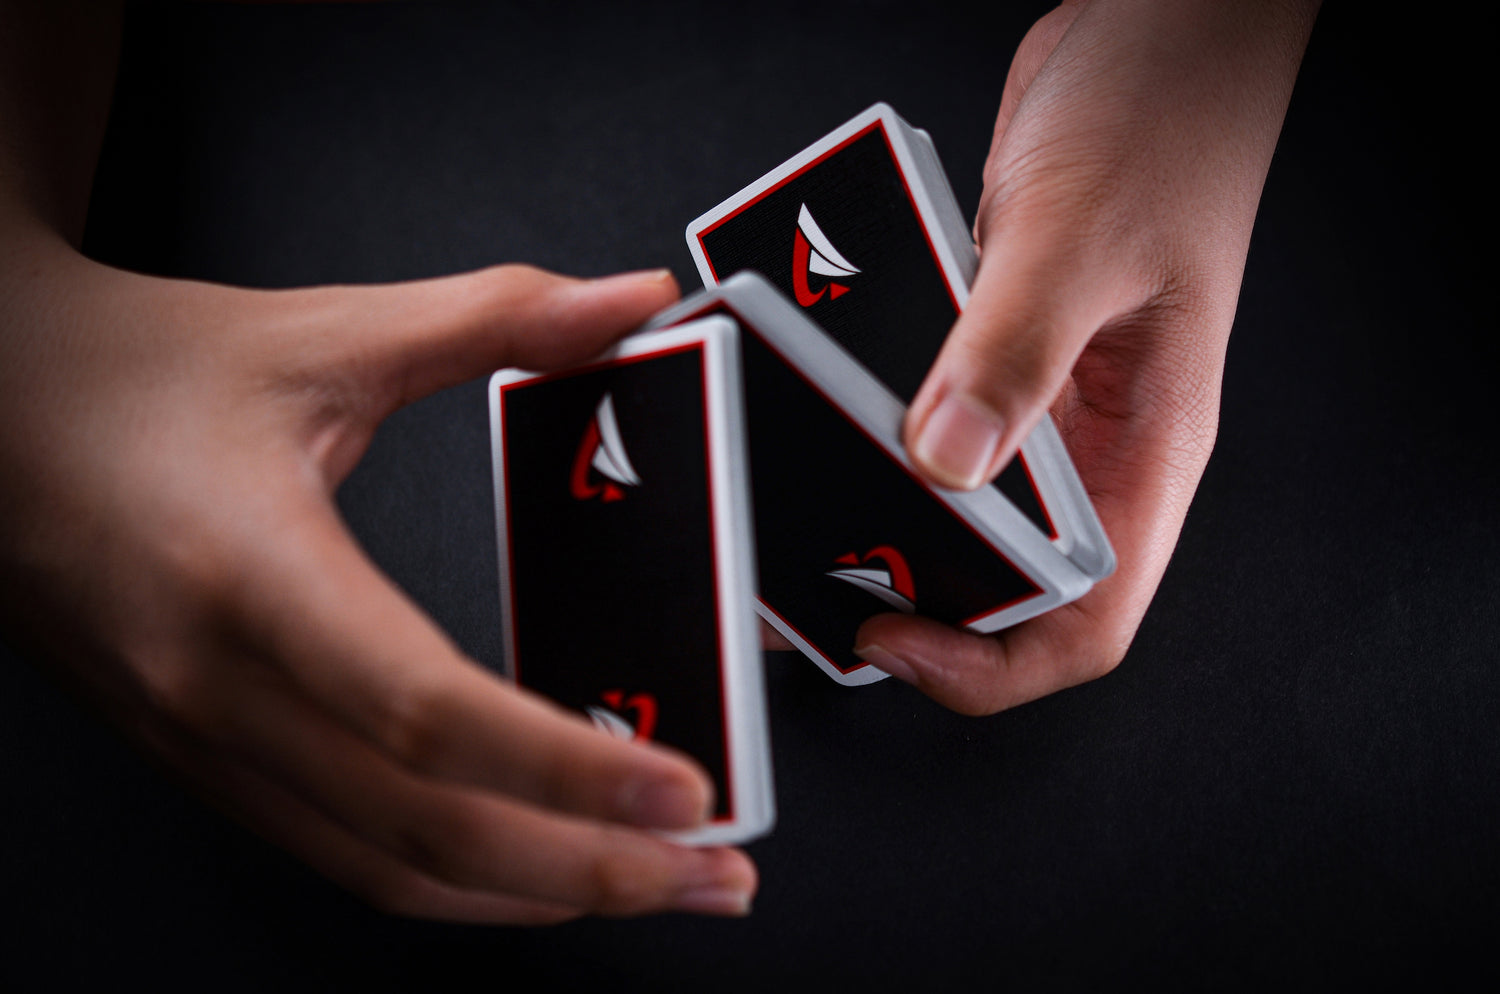 Cardvo Genesis Playing Cards